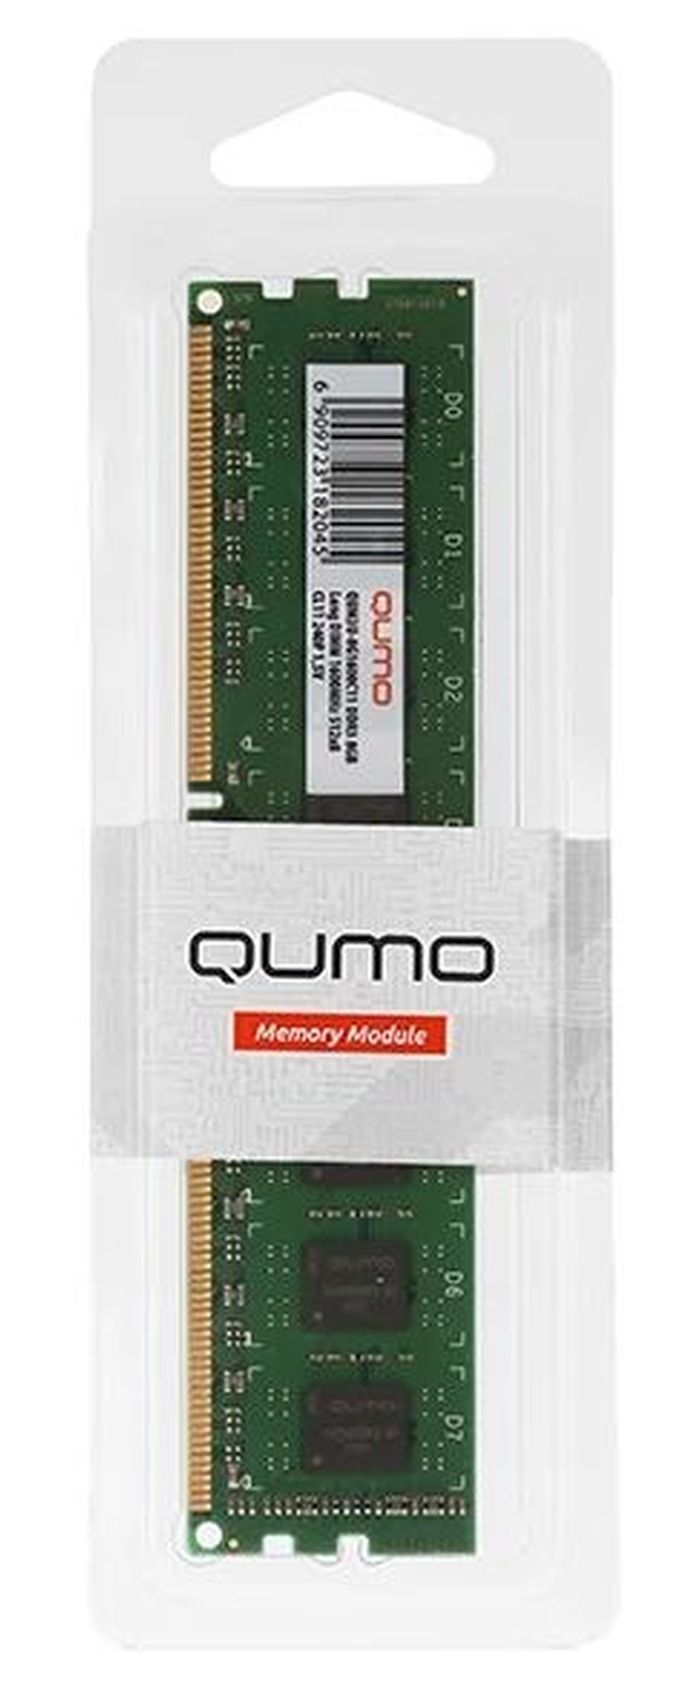 Оперативная память QUMO DDR3 DIMM 4GB 1333MHz (QUM3U-4G1333C9) память оперативная ddr3 infortrend 8gb 1333mhz ddr3nncmd 0010